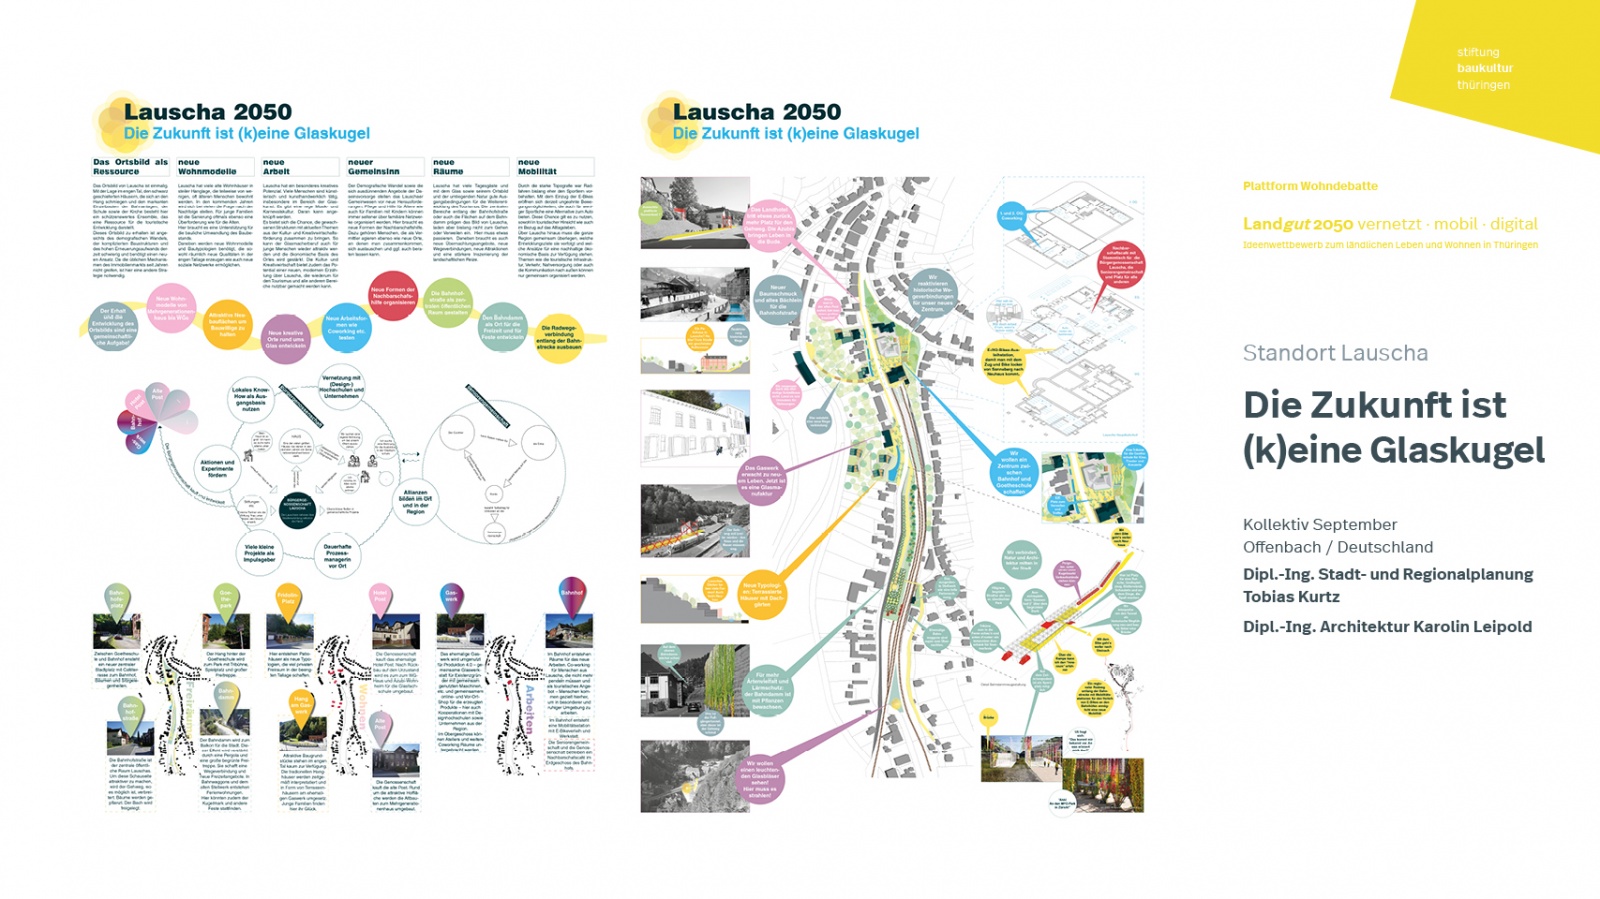 Ideenwettbewerb »Landgut 2050« | Wettbewerbsbeitrag »Die Zukunft ist (k)eine Glaskugel«, Figure: Ideenwettbewerb »Landgut 2050«